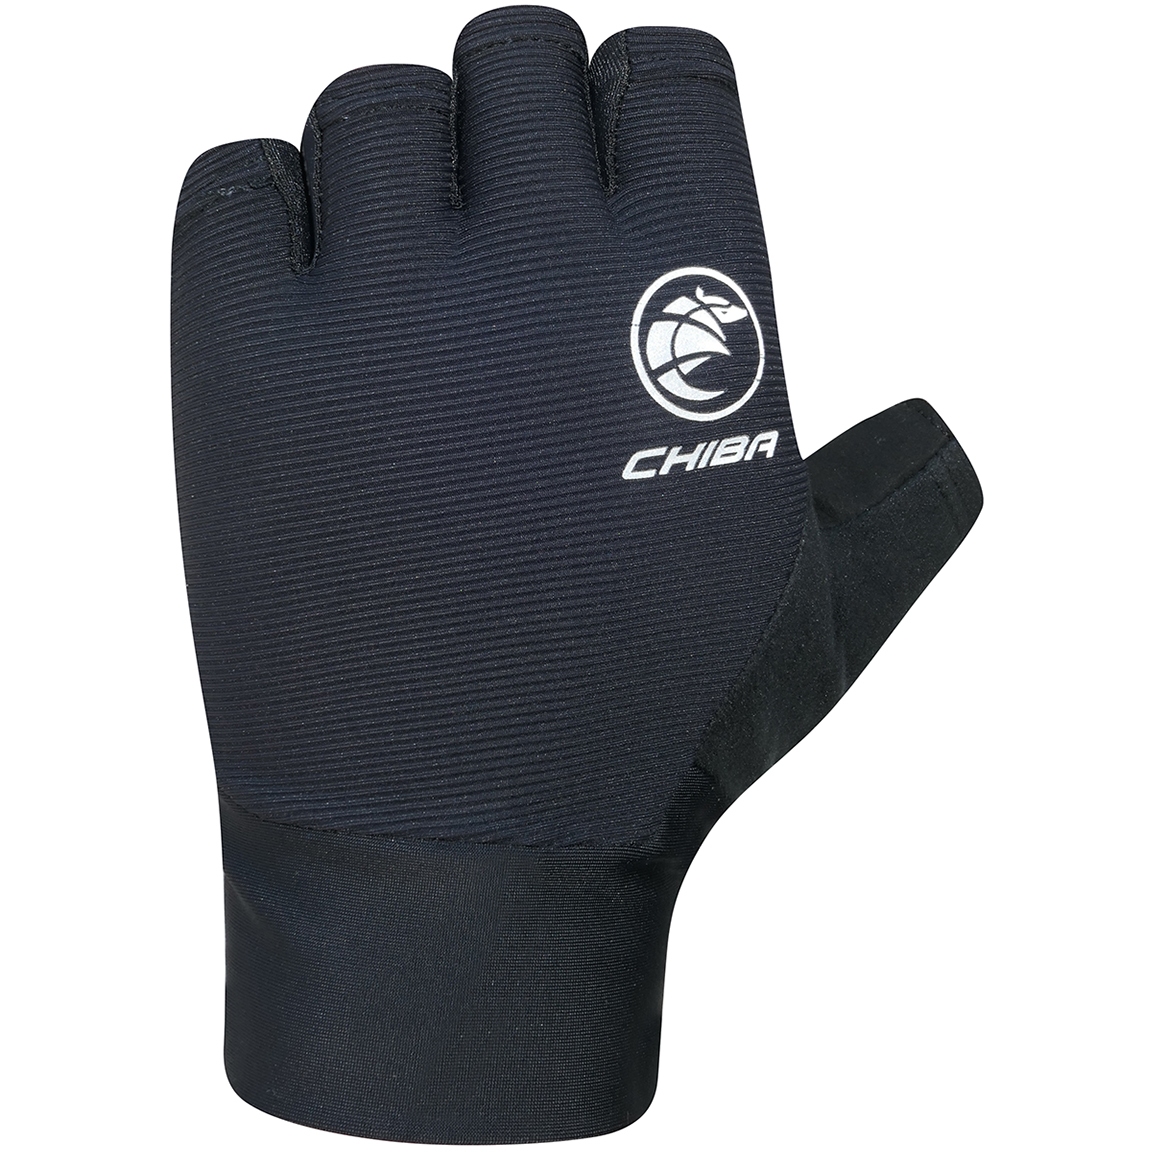 Productfoto van Chiba Team Pro Handschoenen met Korte Vingers - zwart 3030522